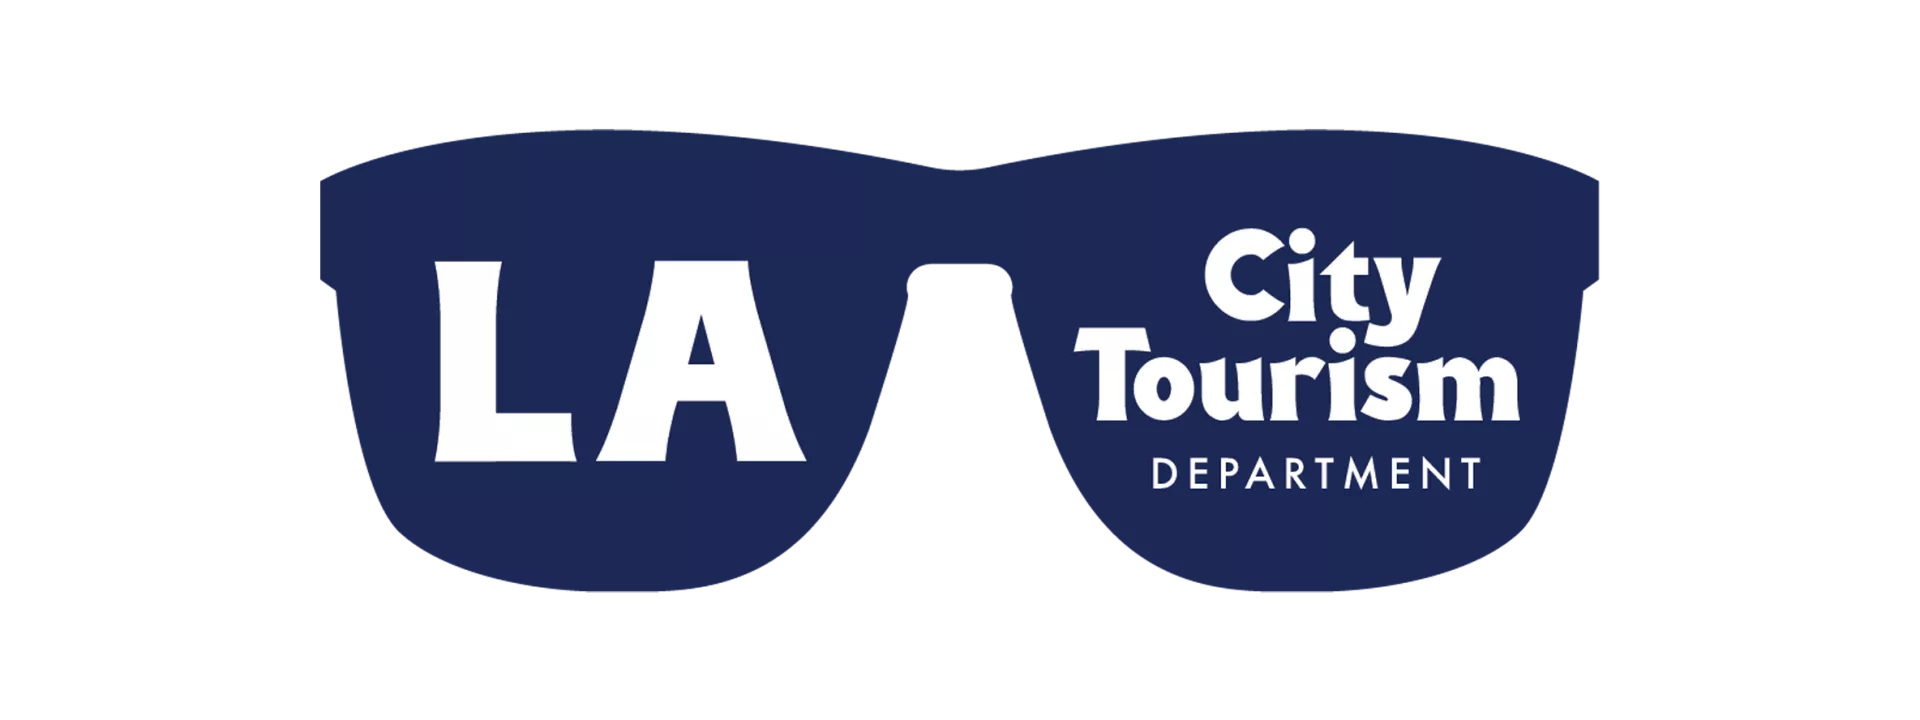 LA City Tourism Department Logo